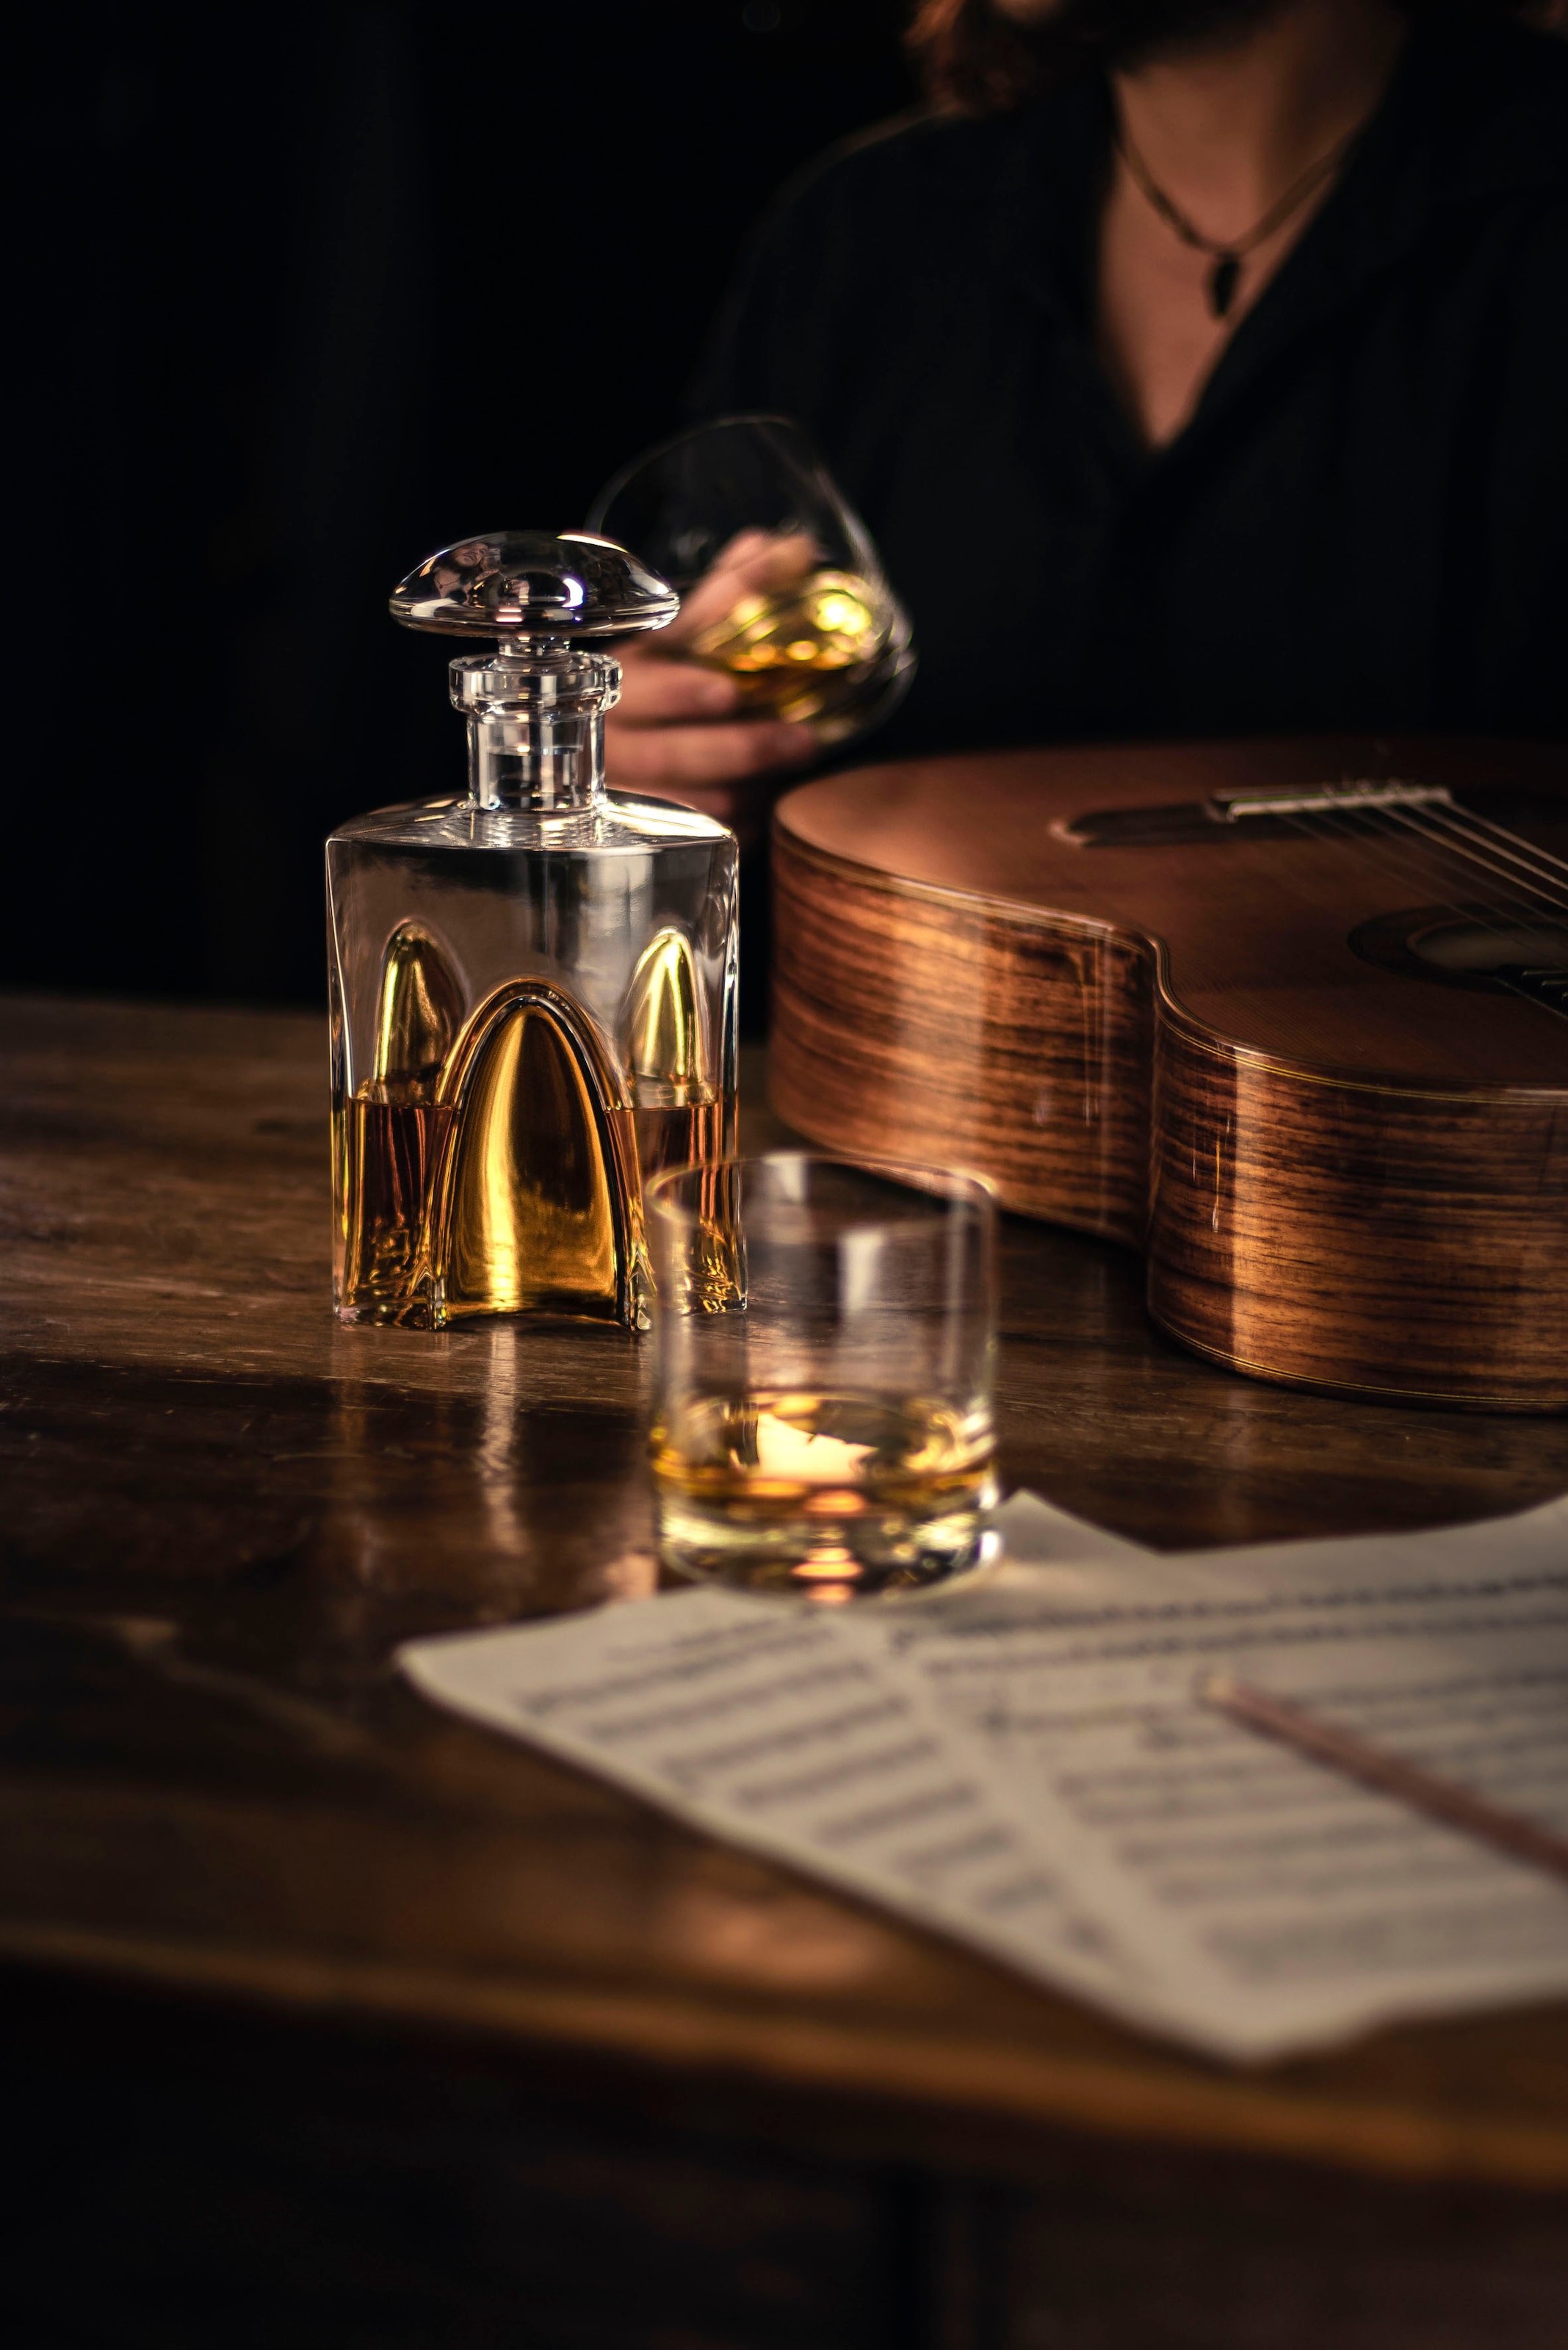 Eisch Whiskyglas »GENTLEMAN, Made in Germany«, (Set, 3 tlg., 1 Whiskykaraffe, 2 Whiskybecher im Geschenkkarton), mundgeblasen, in Handarbeit mit echtem Gold veredelt, 3-teilig